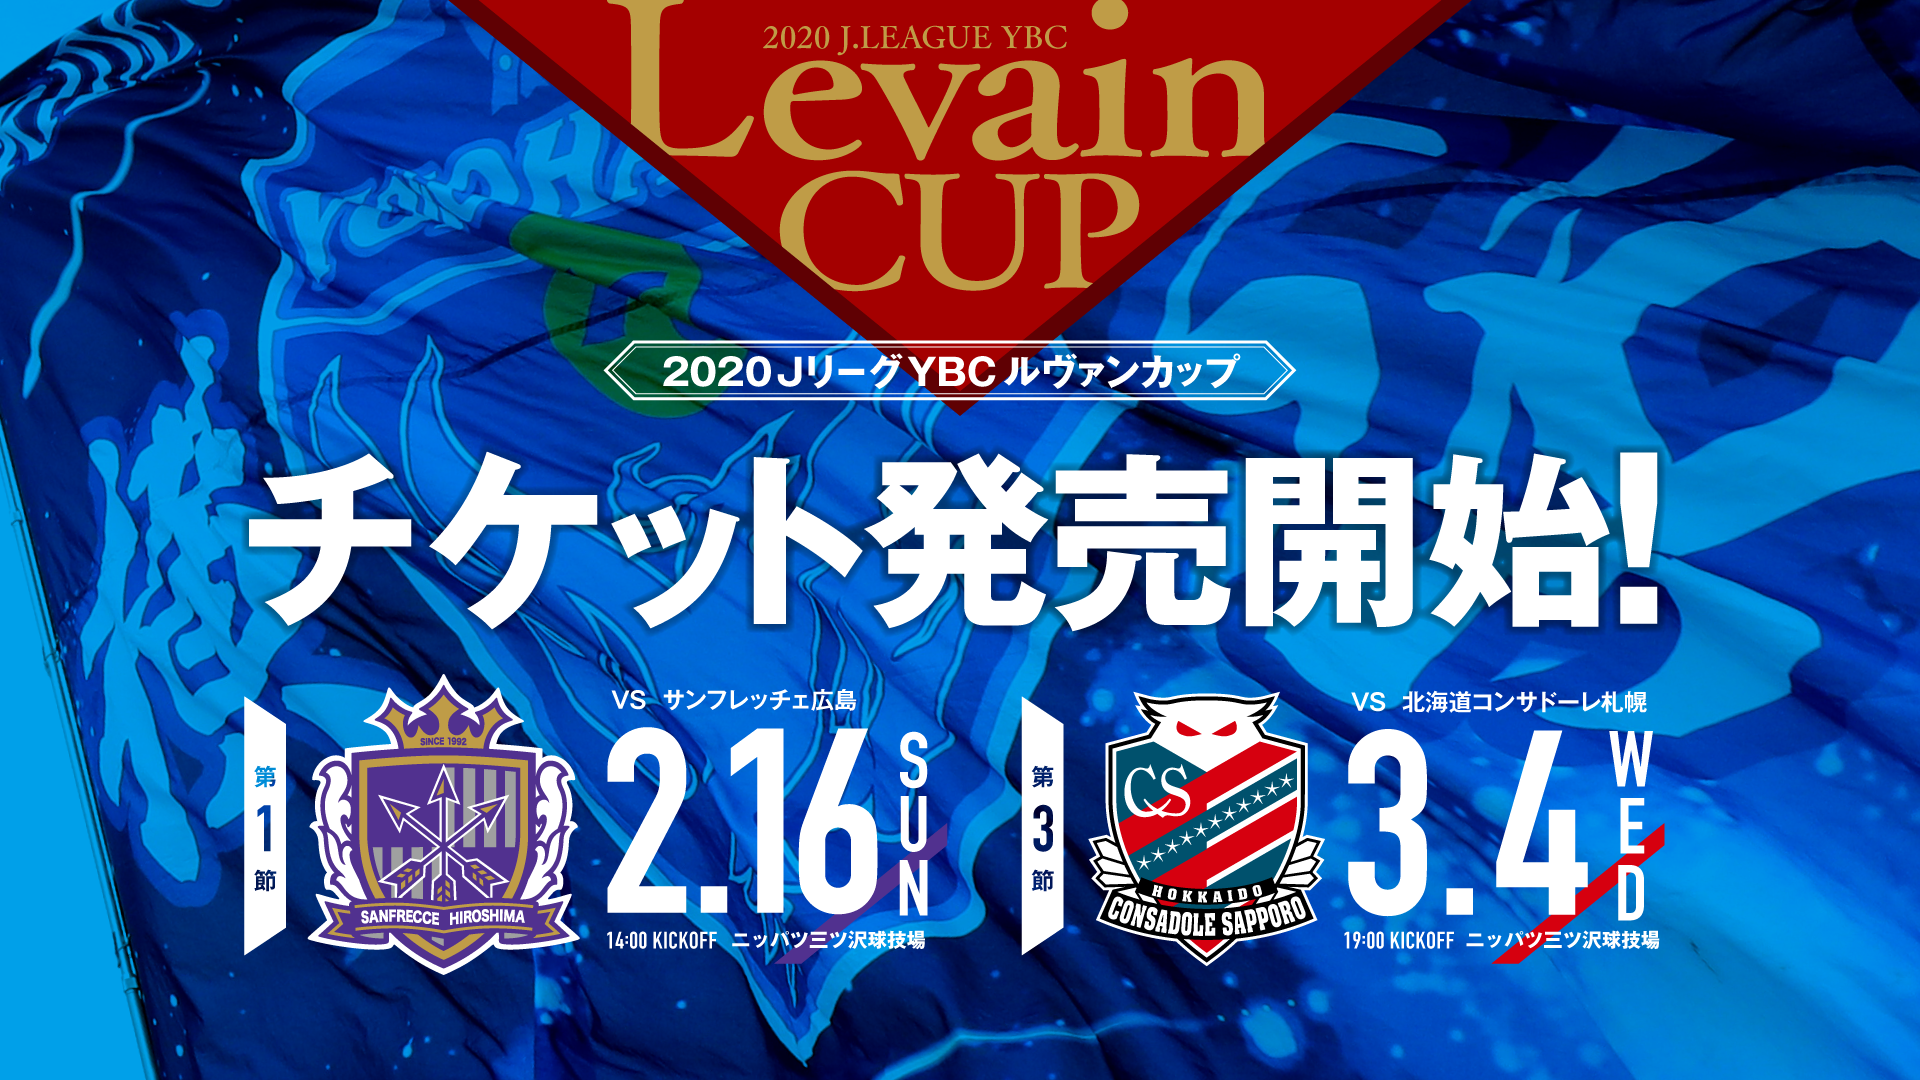 ルヴァンカップ横浜fcホームゲームチケット発売のお知らせ 横浜fcオフィシャルウェブサイト